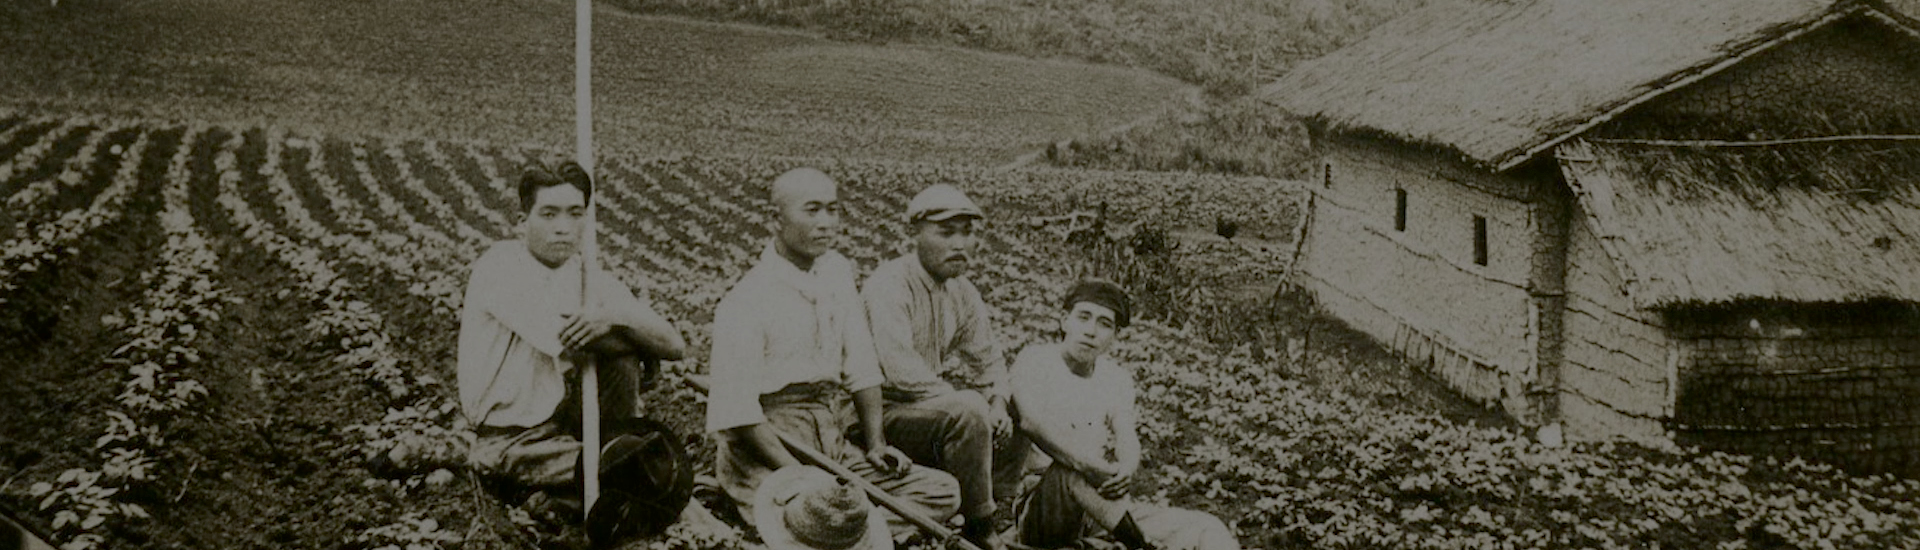 Foto sépia de quatro homens japoneses agachados em meio a uma plantação, com enxadas e chapéus ao redor. Ao fundo, do lado direito, uma casa de telhado de palha.